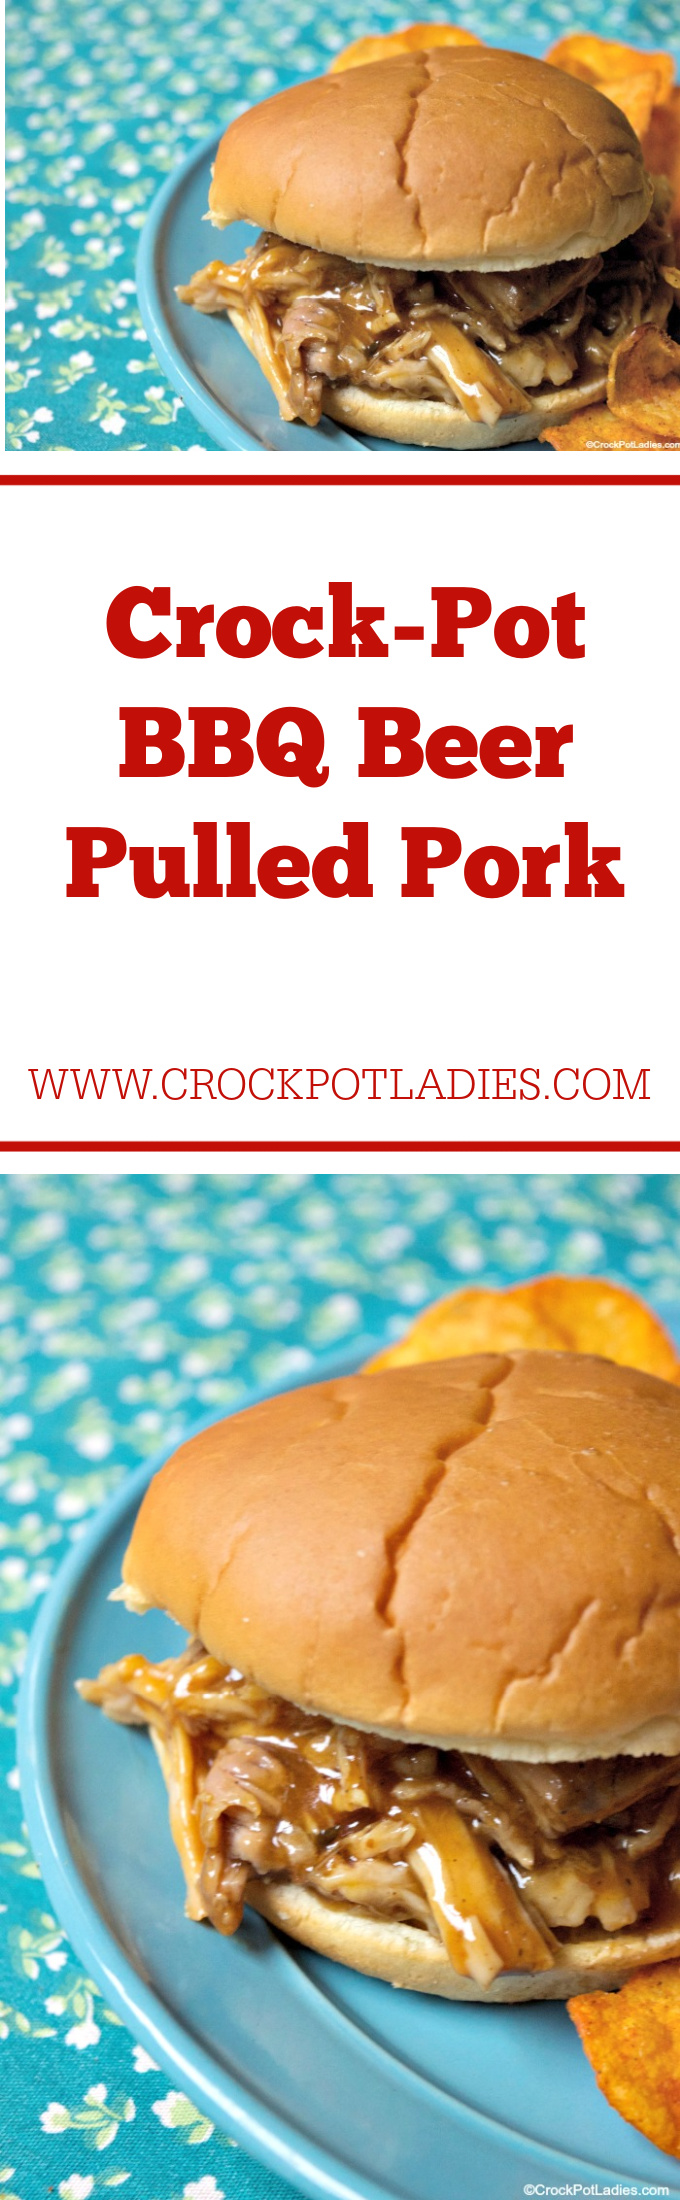 Crock-Pot BBQ Beer Pulled Pork